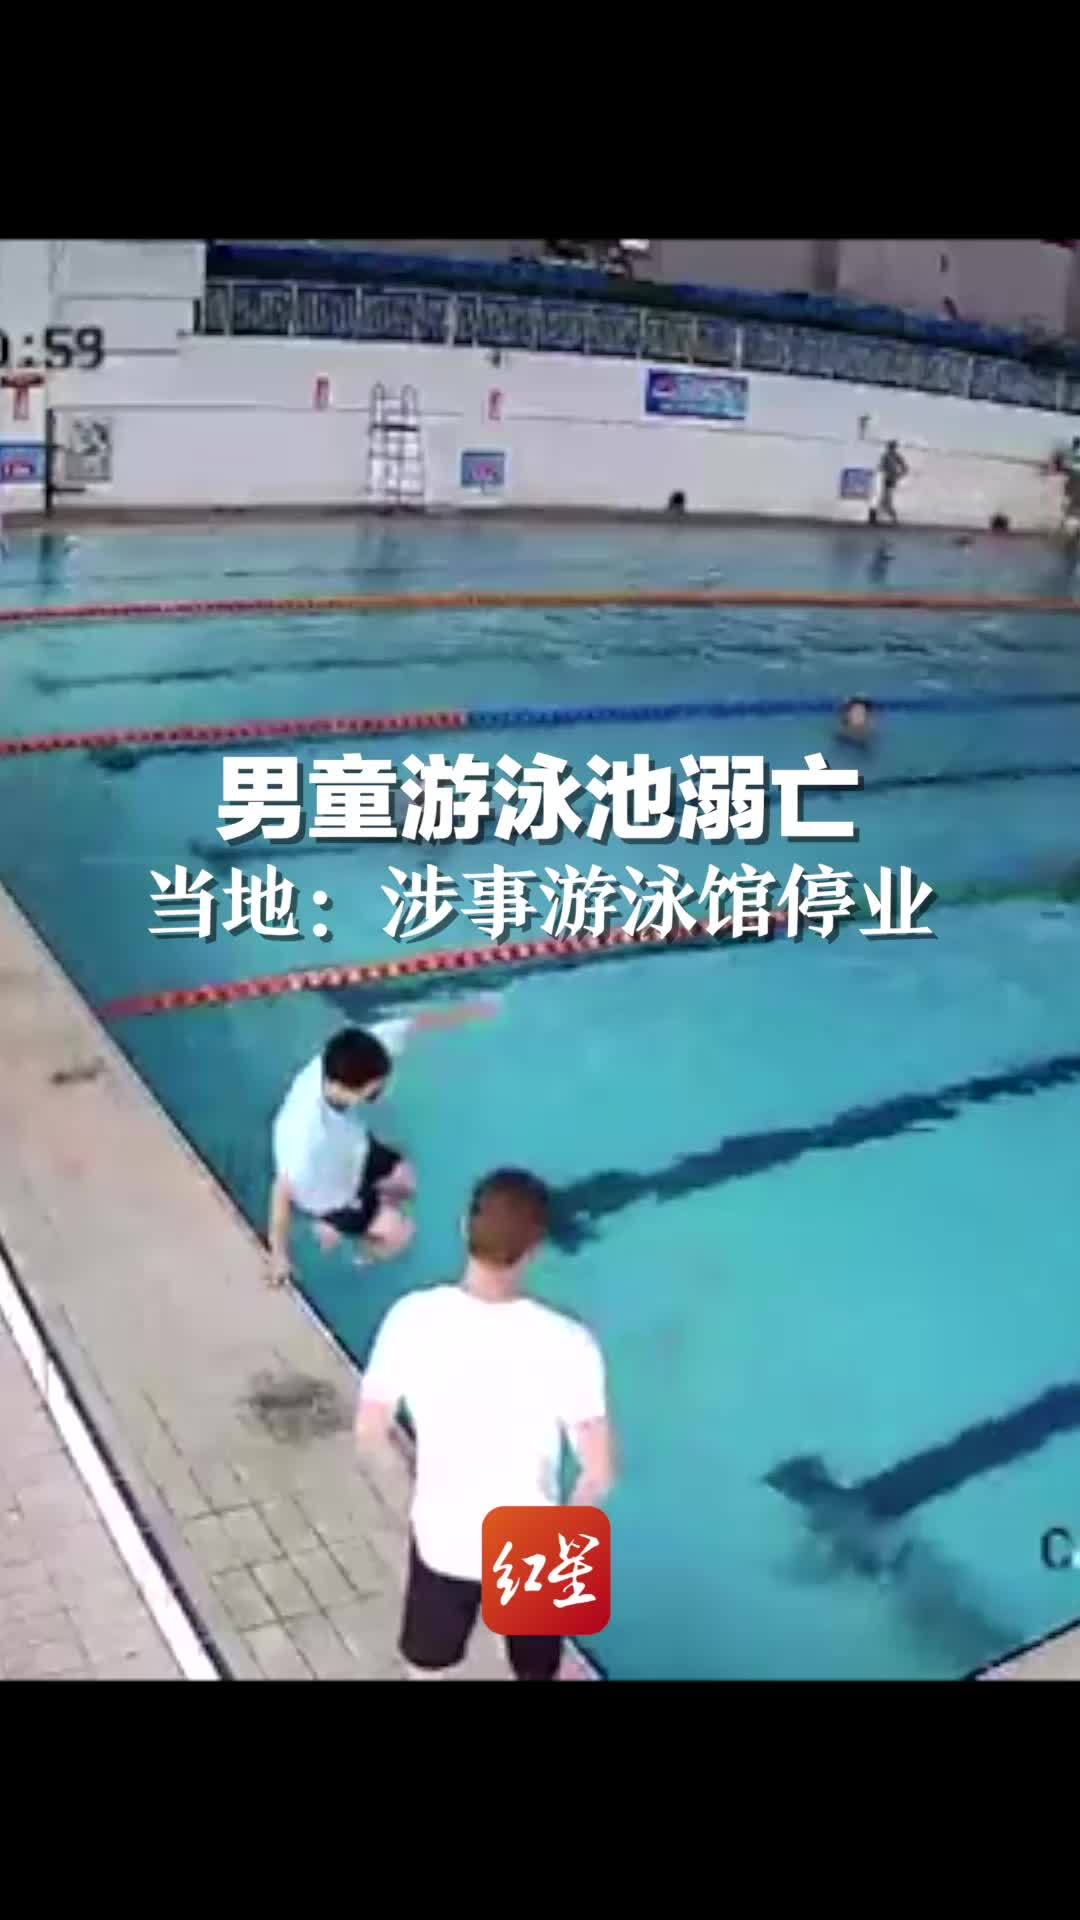 湖南一男童游泳池挣扎1分钟后溺亡 当地:涉事游泳馆已停业